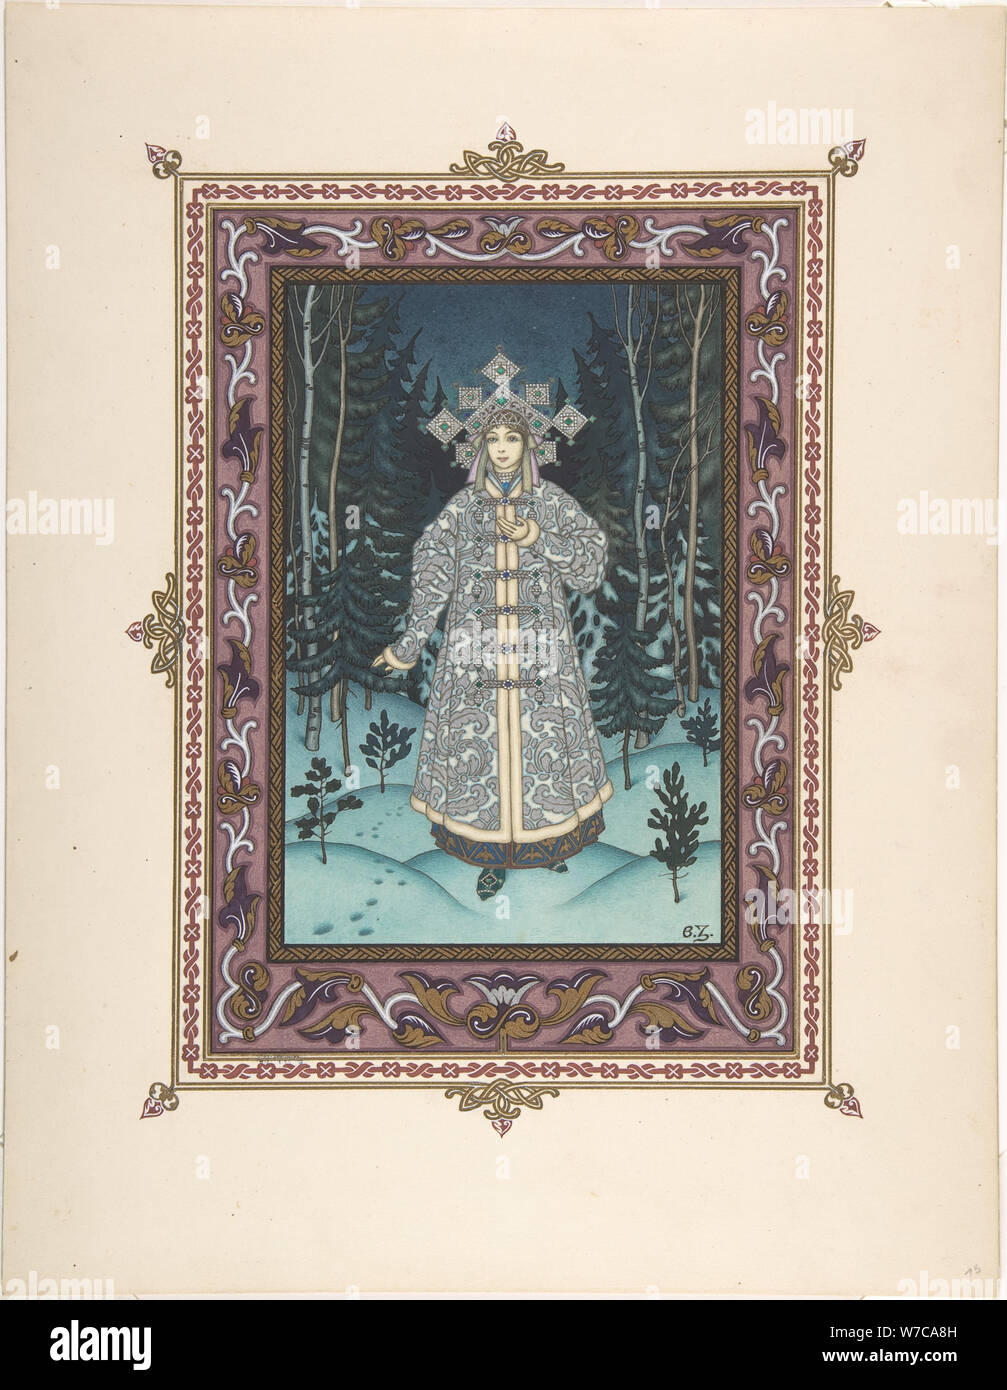 Illustration pour le conte de fées Snegurochka, ch. 1925. Artiste : Zvorykin, Boris Vasilievich (1872-après 1935) Banque D'Images